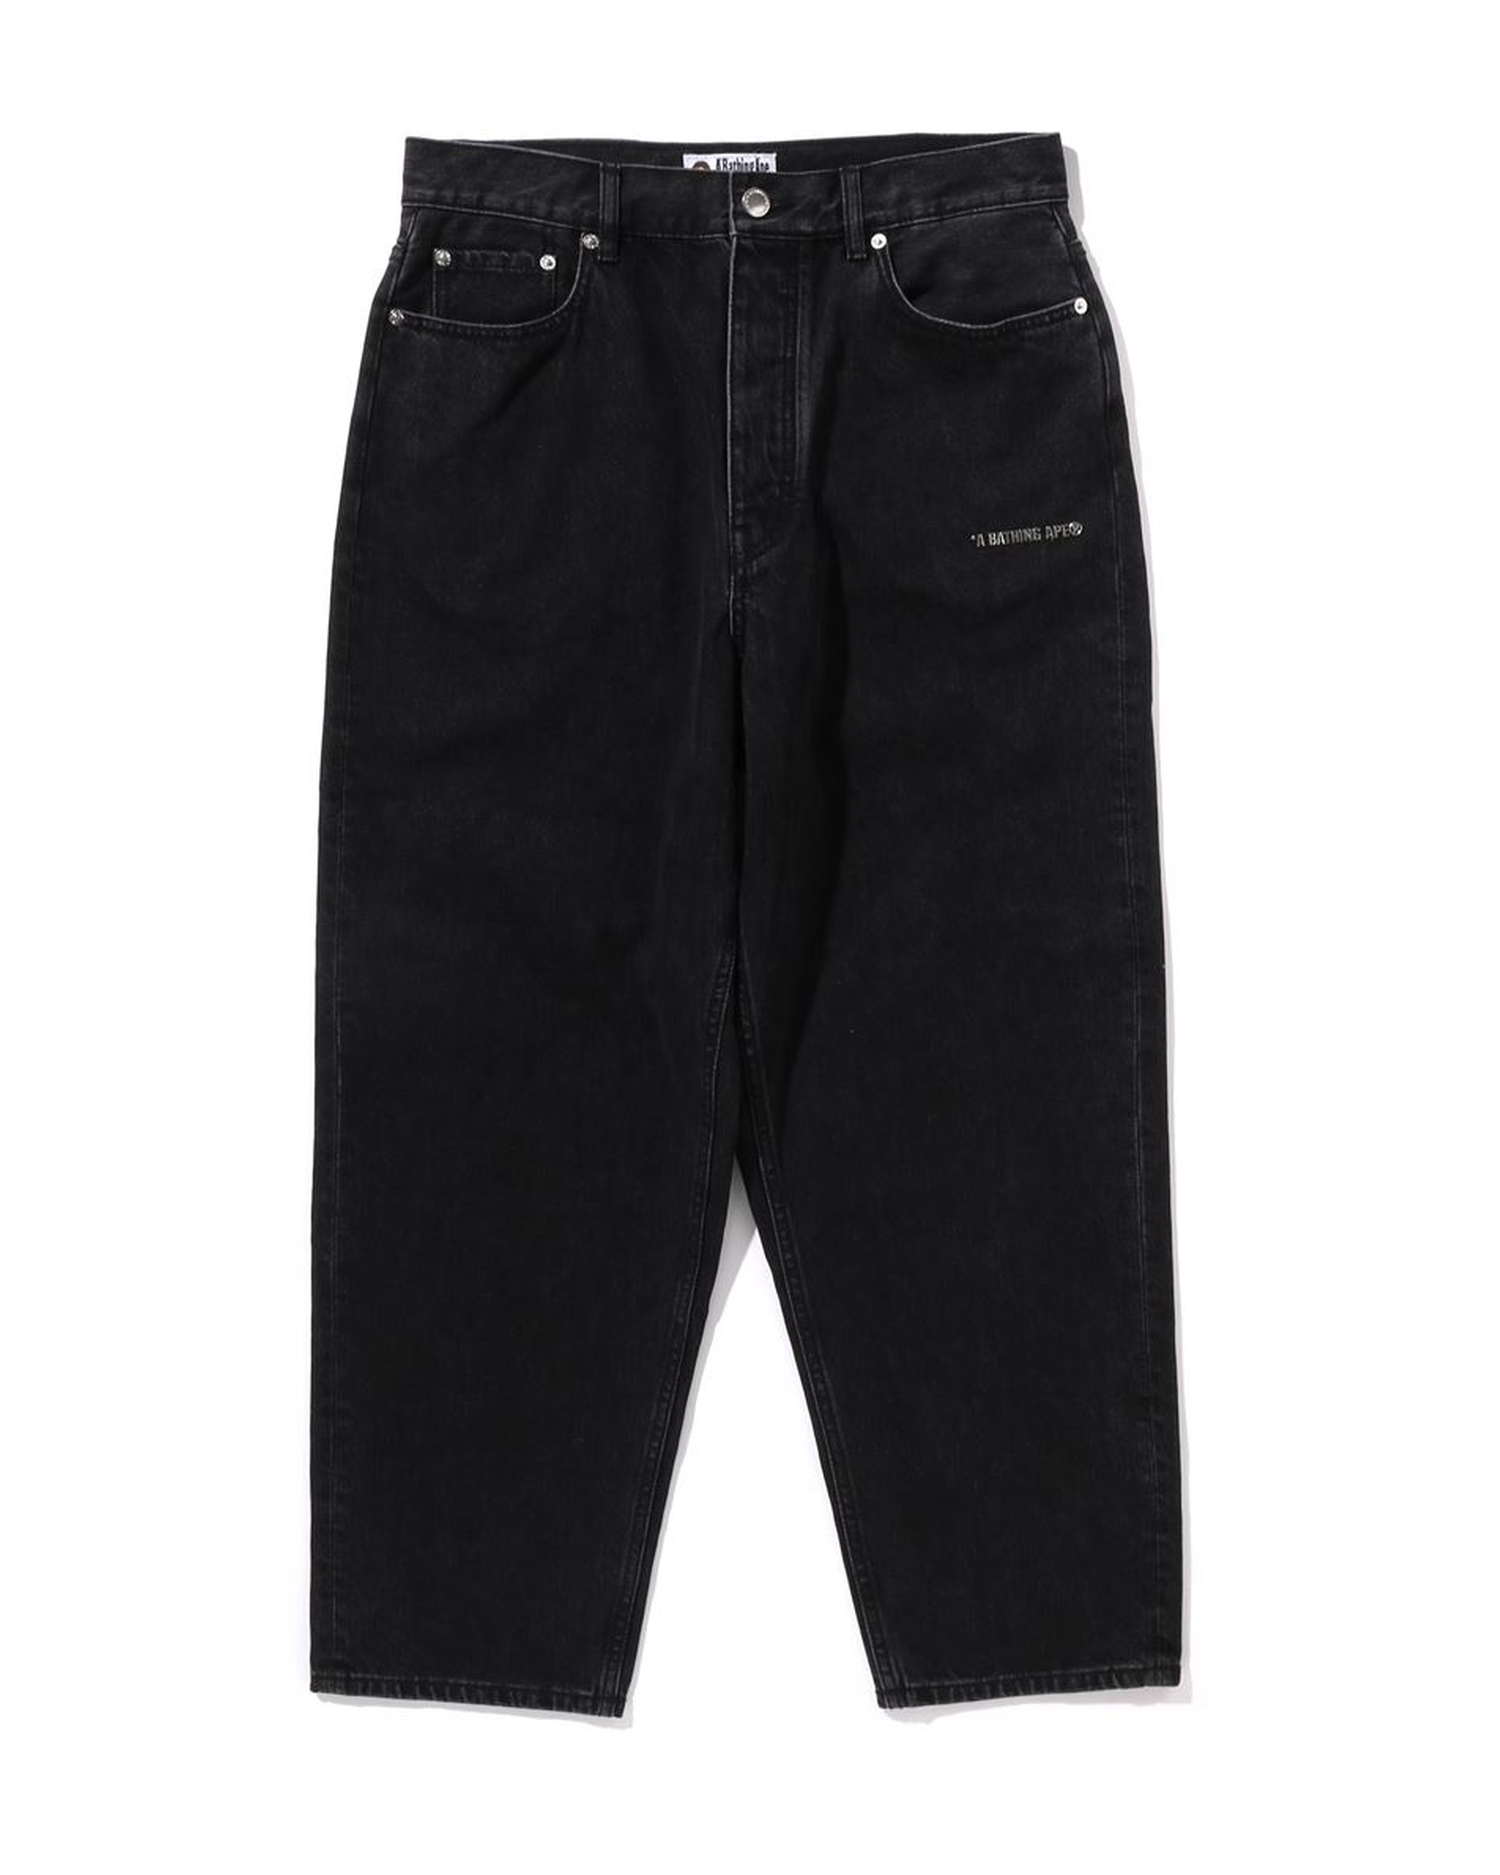 Shop Now Denim Jeans for Men Online - Denim Pants for Men | Blueage